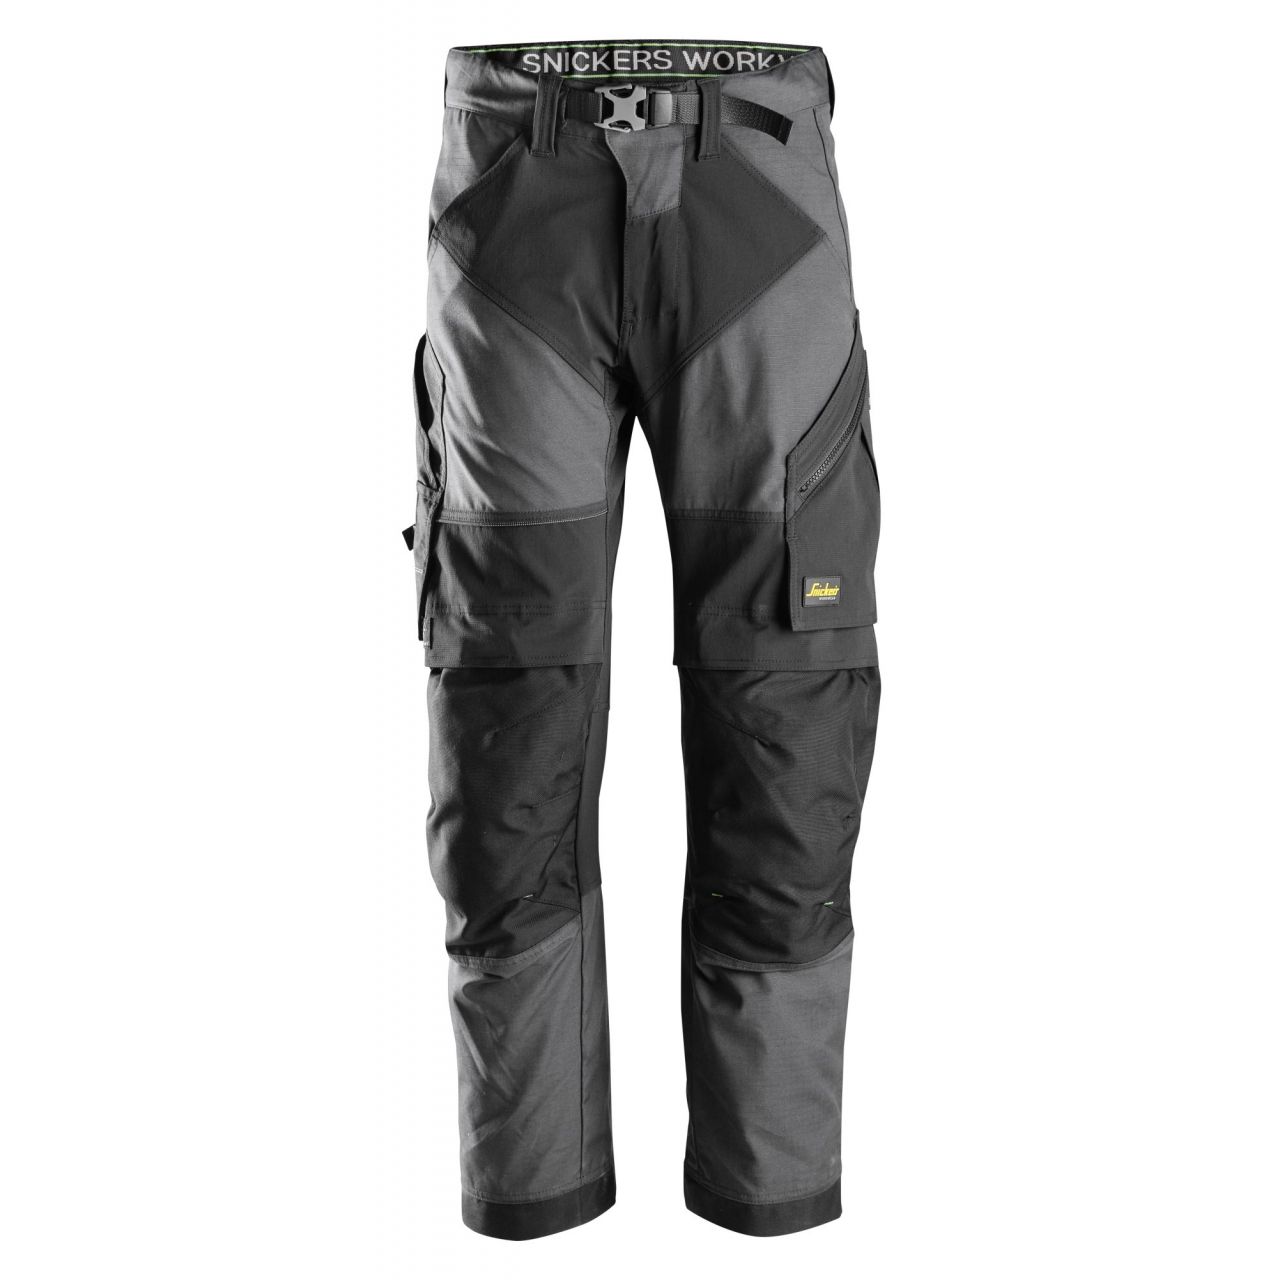 Pantalon FlexiWork+ gris acero-negro talla 252